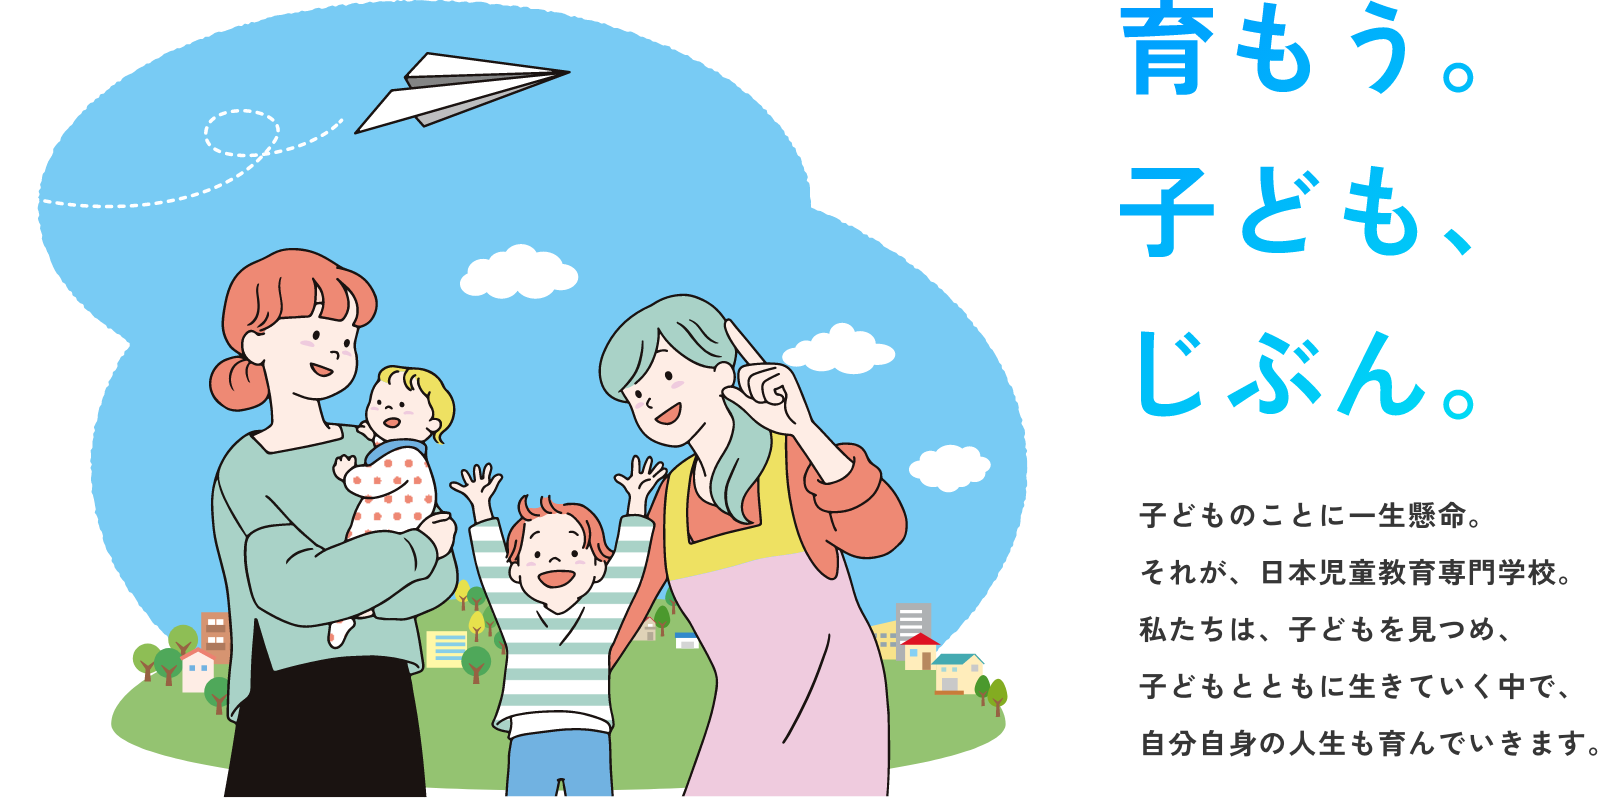 子どものことに一生懸命。
それが、日本児童教育専門学校。
私たちは、子どもを見つめ、
子どもとともに生きていく中で、
自分自身の人生も育んでいきます。